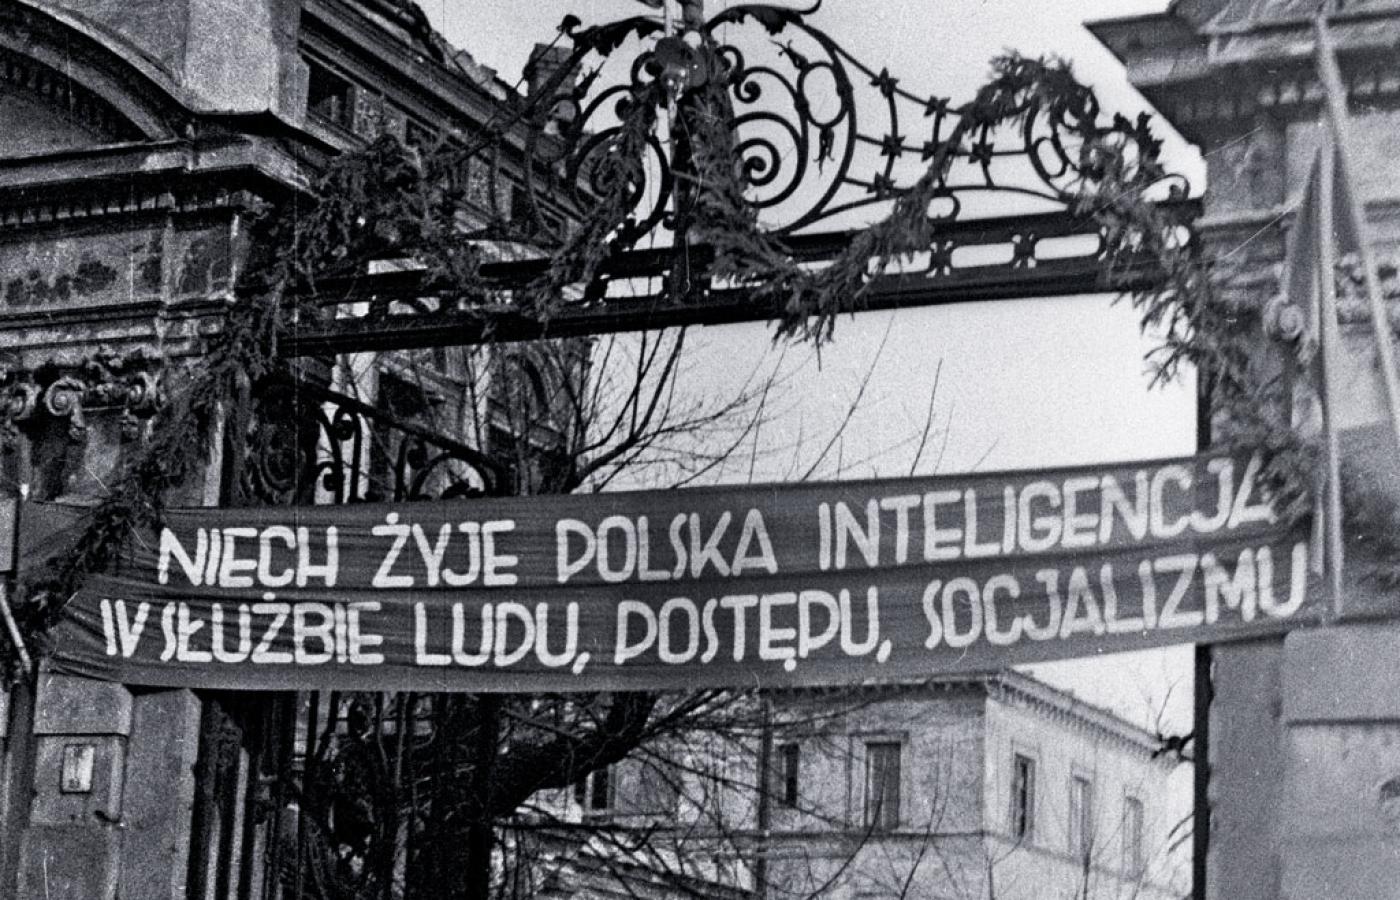 Brama Uniwersytetu Warszawskiego ustrojona hasłami z okazji I Zjazdu PZPR, 15 grudnia 1948 r.